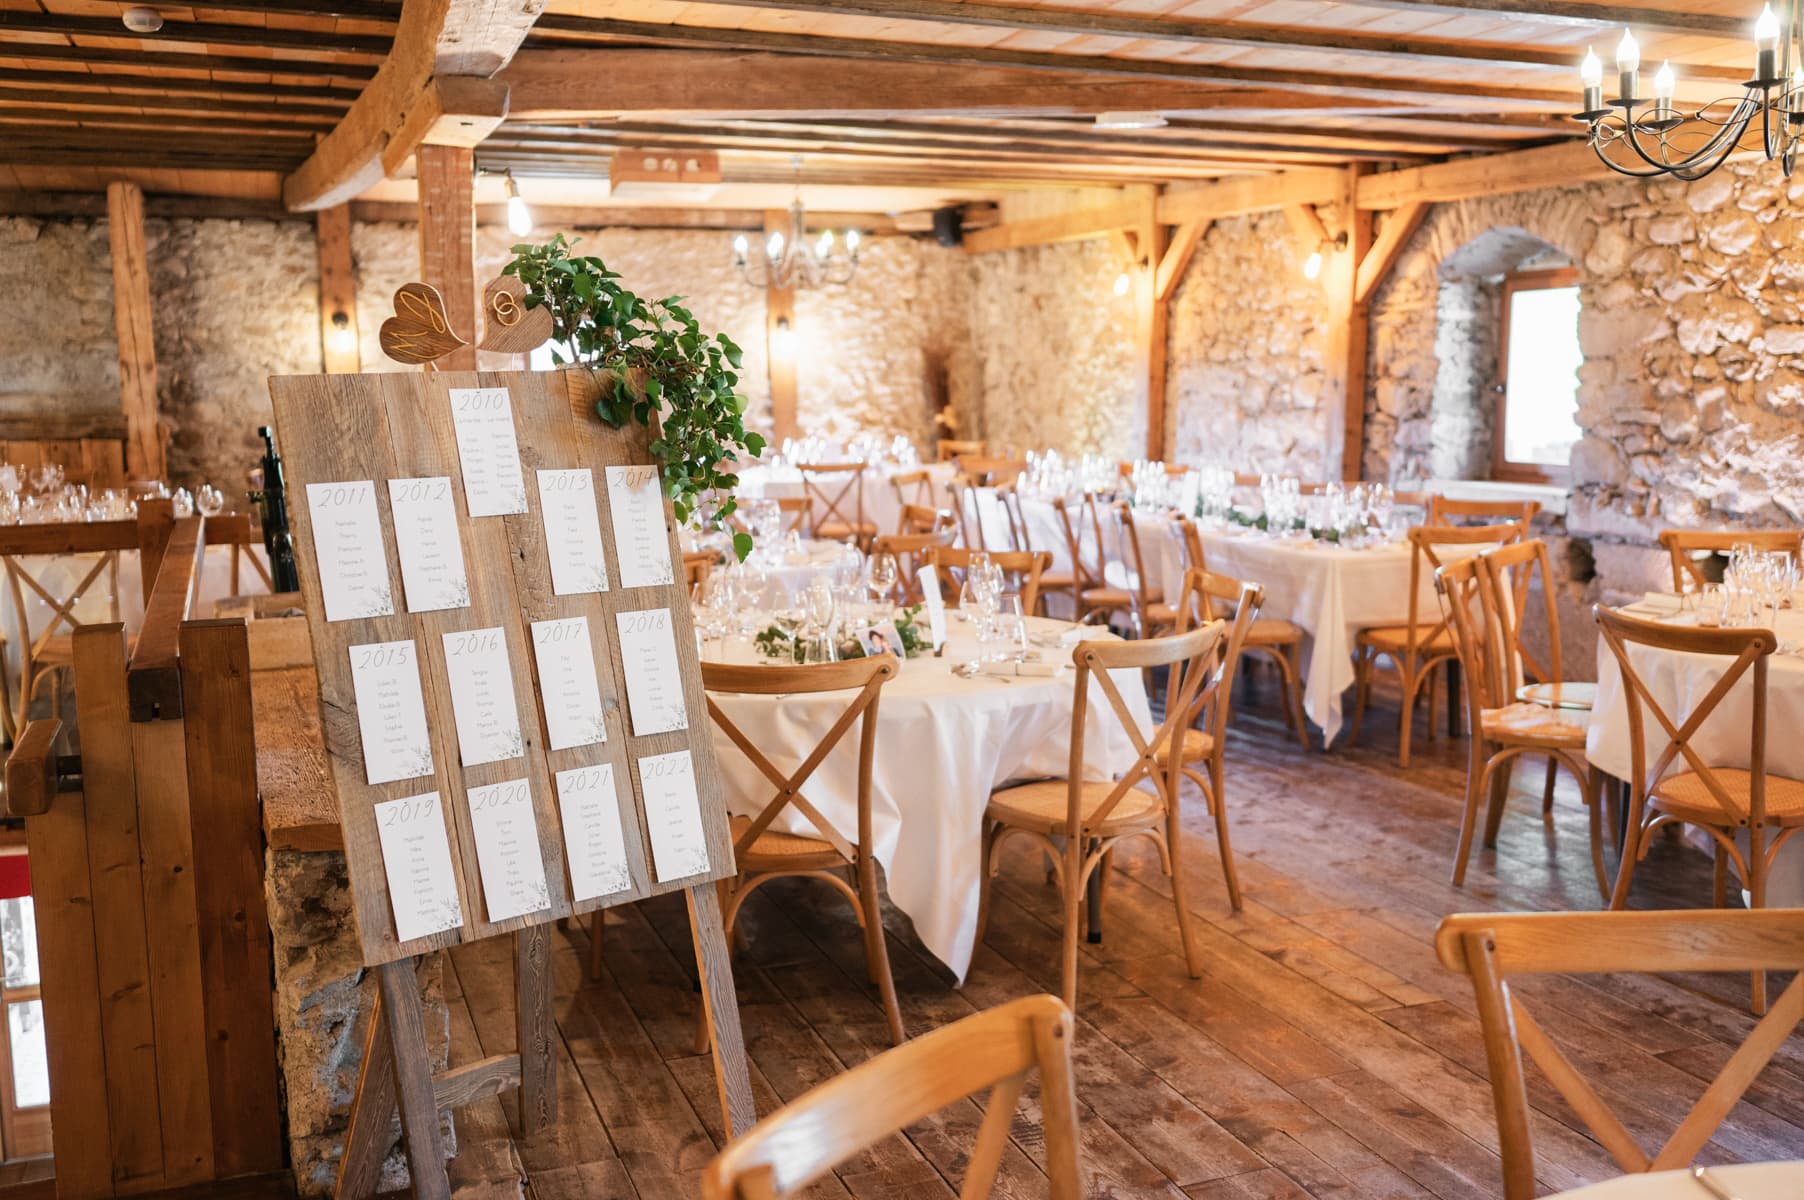 Salle du repas de mariage au château de Saint-Sixt